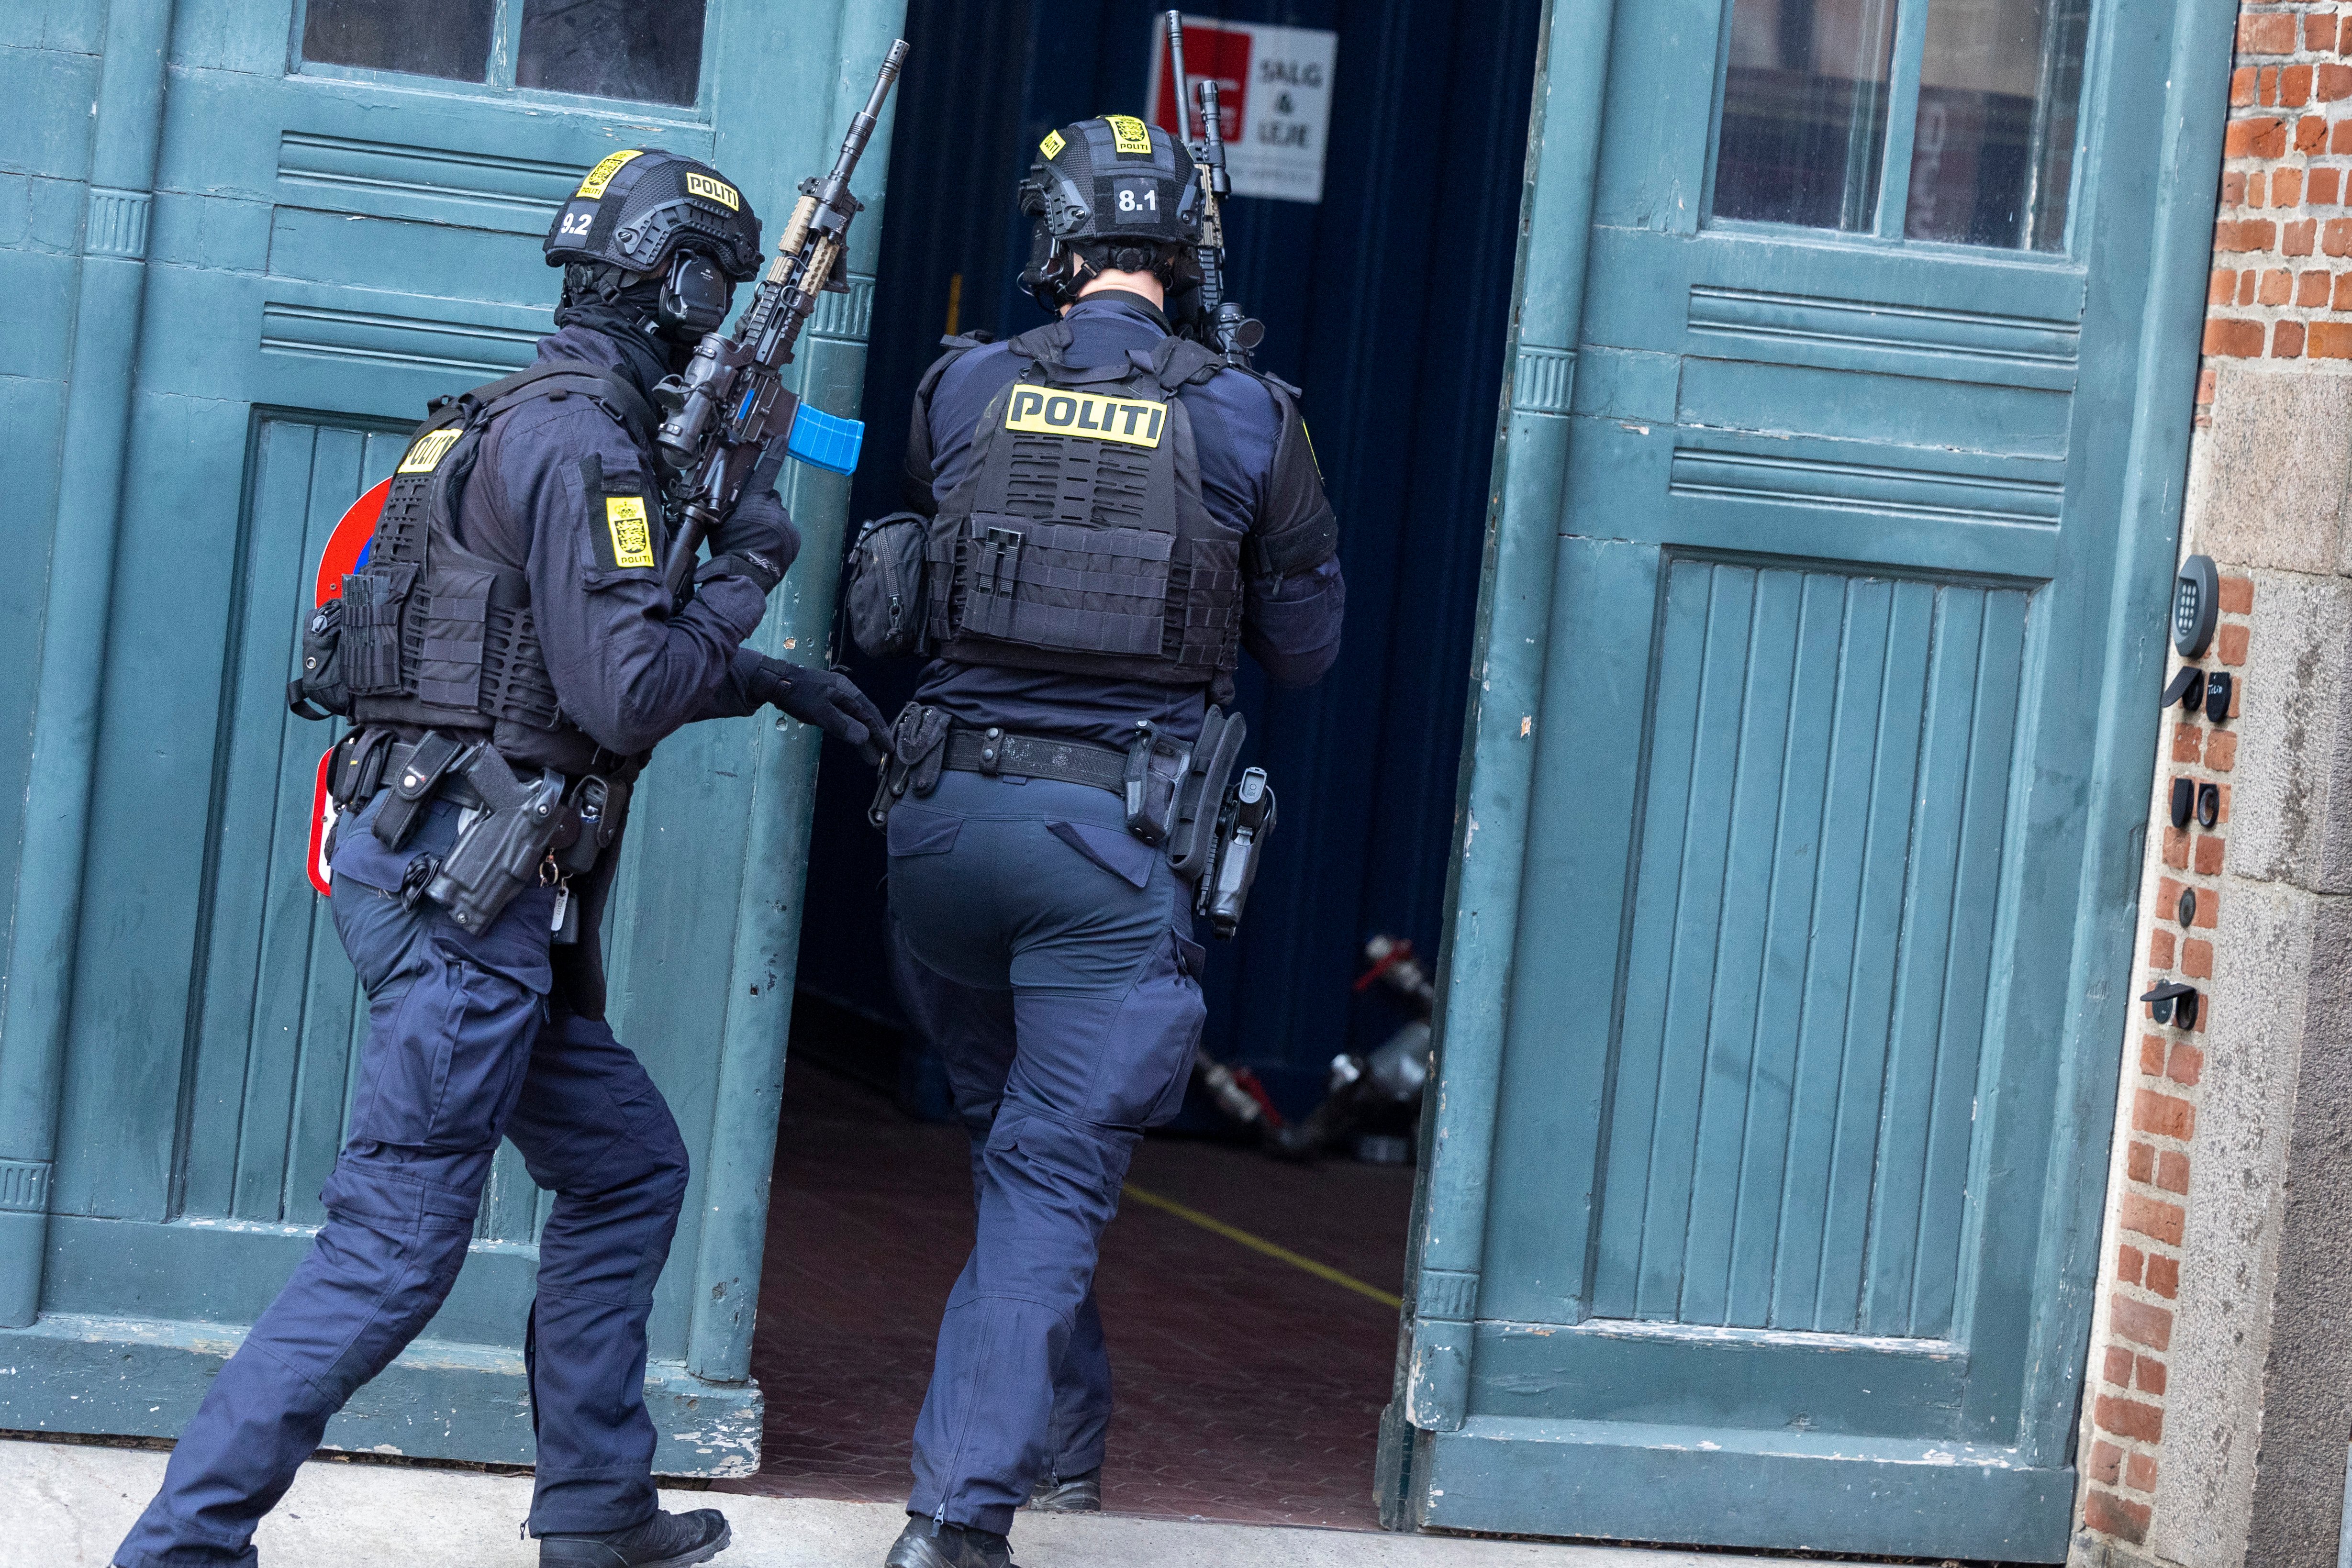 Se billederne: Her træner bevæbnet politi i Aalborg